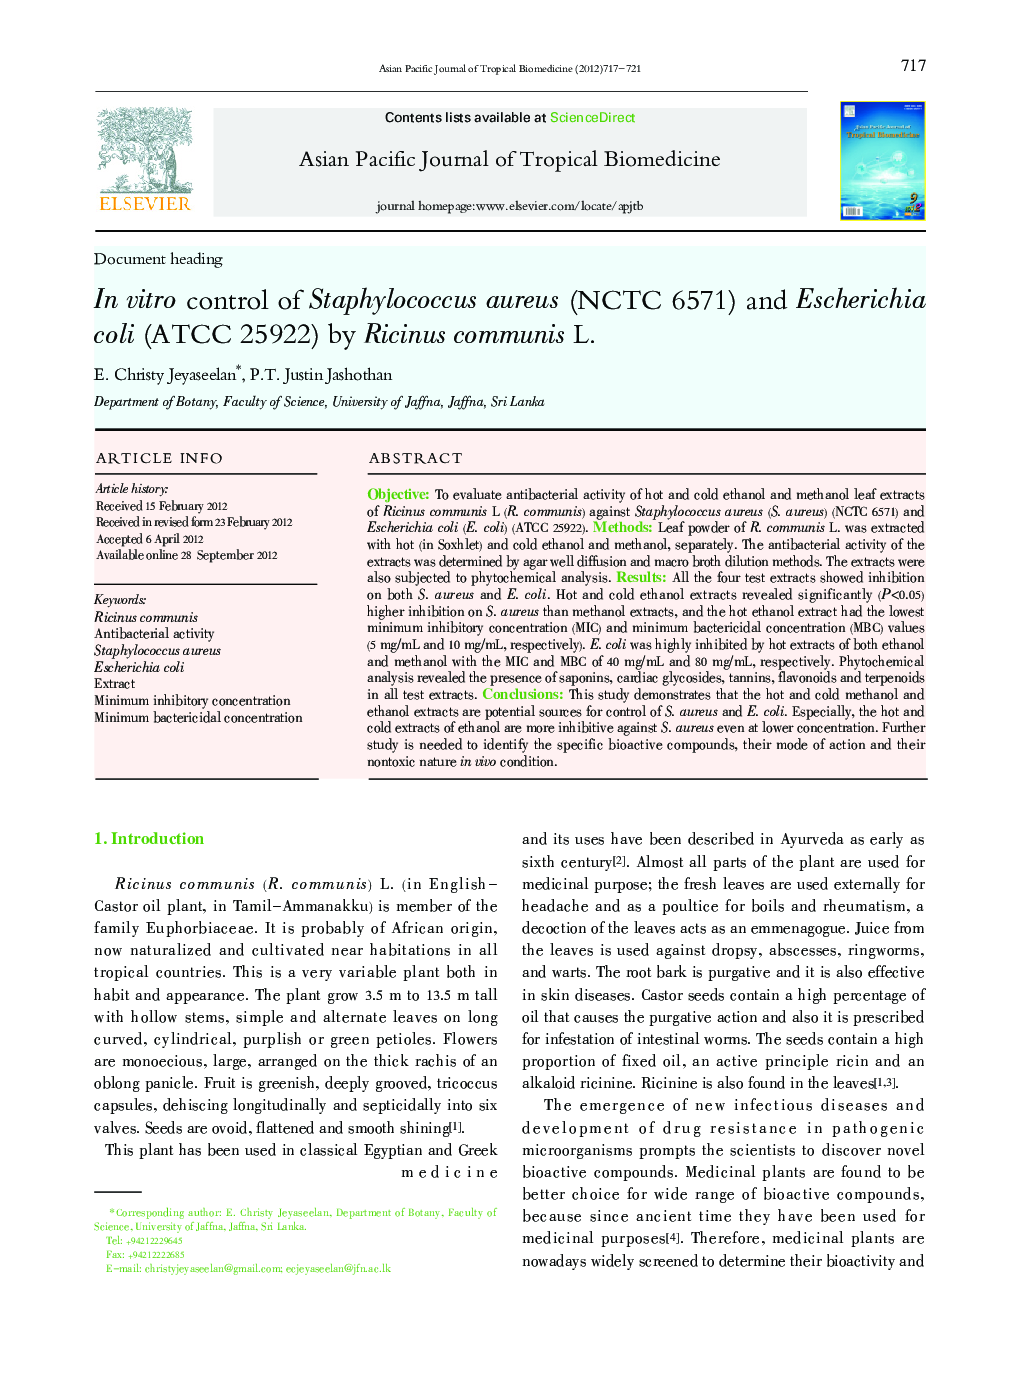 In vitro control of Staphylococcus aureus (NCTC 6571) and Escherichia coli (ATCC 25922) by Ricinus communis L.